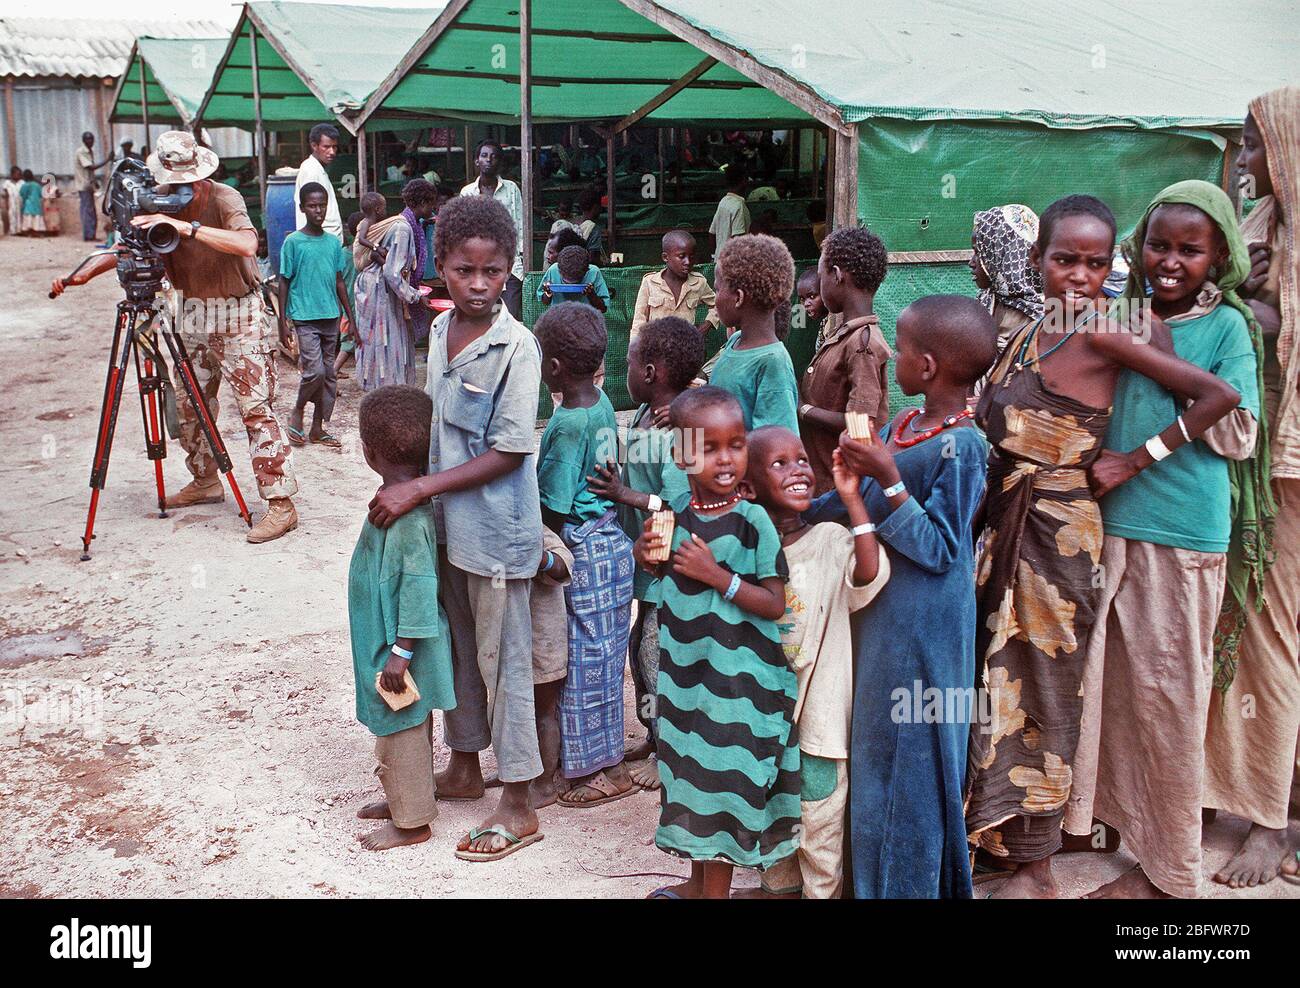 1993 - Jefe del fotógrafo Robert Sasek Mate videocintas somalíes alineando para una comida en el centro de alimentación de preocupación durante el esfuerzo de socorro multinacional operación RESTAURAR LA ESPERANZA. El centro es operado por el Irish Relief Organisation preocupación. Foto de stock